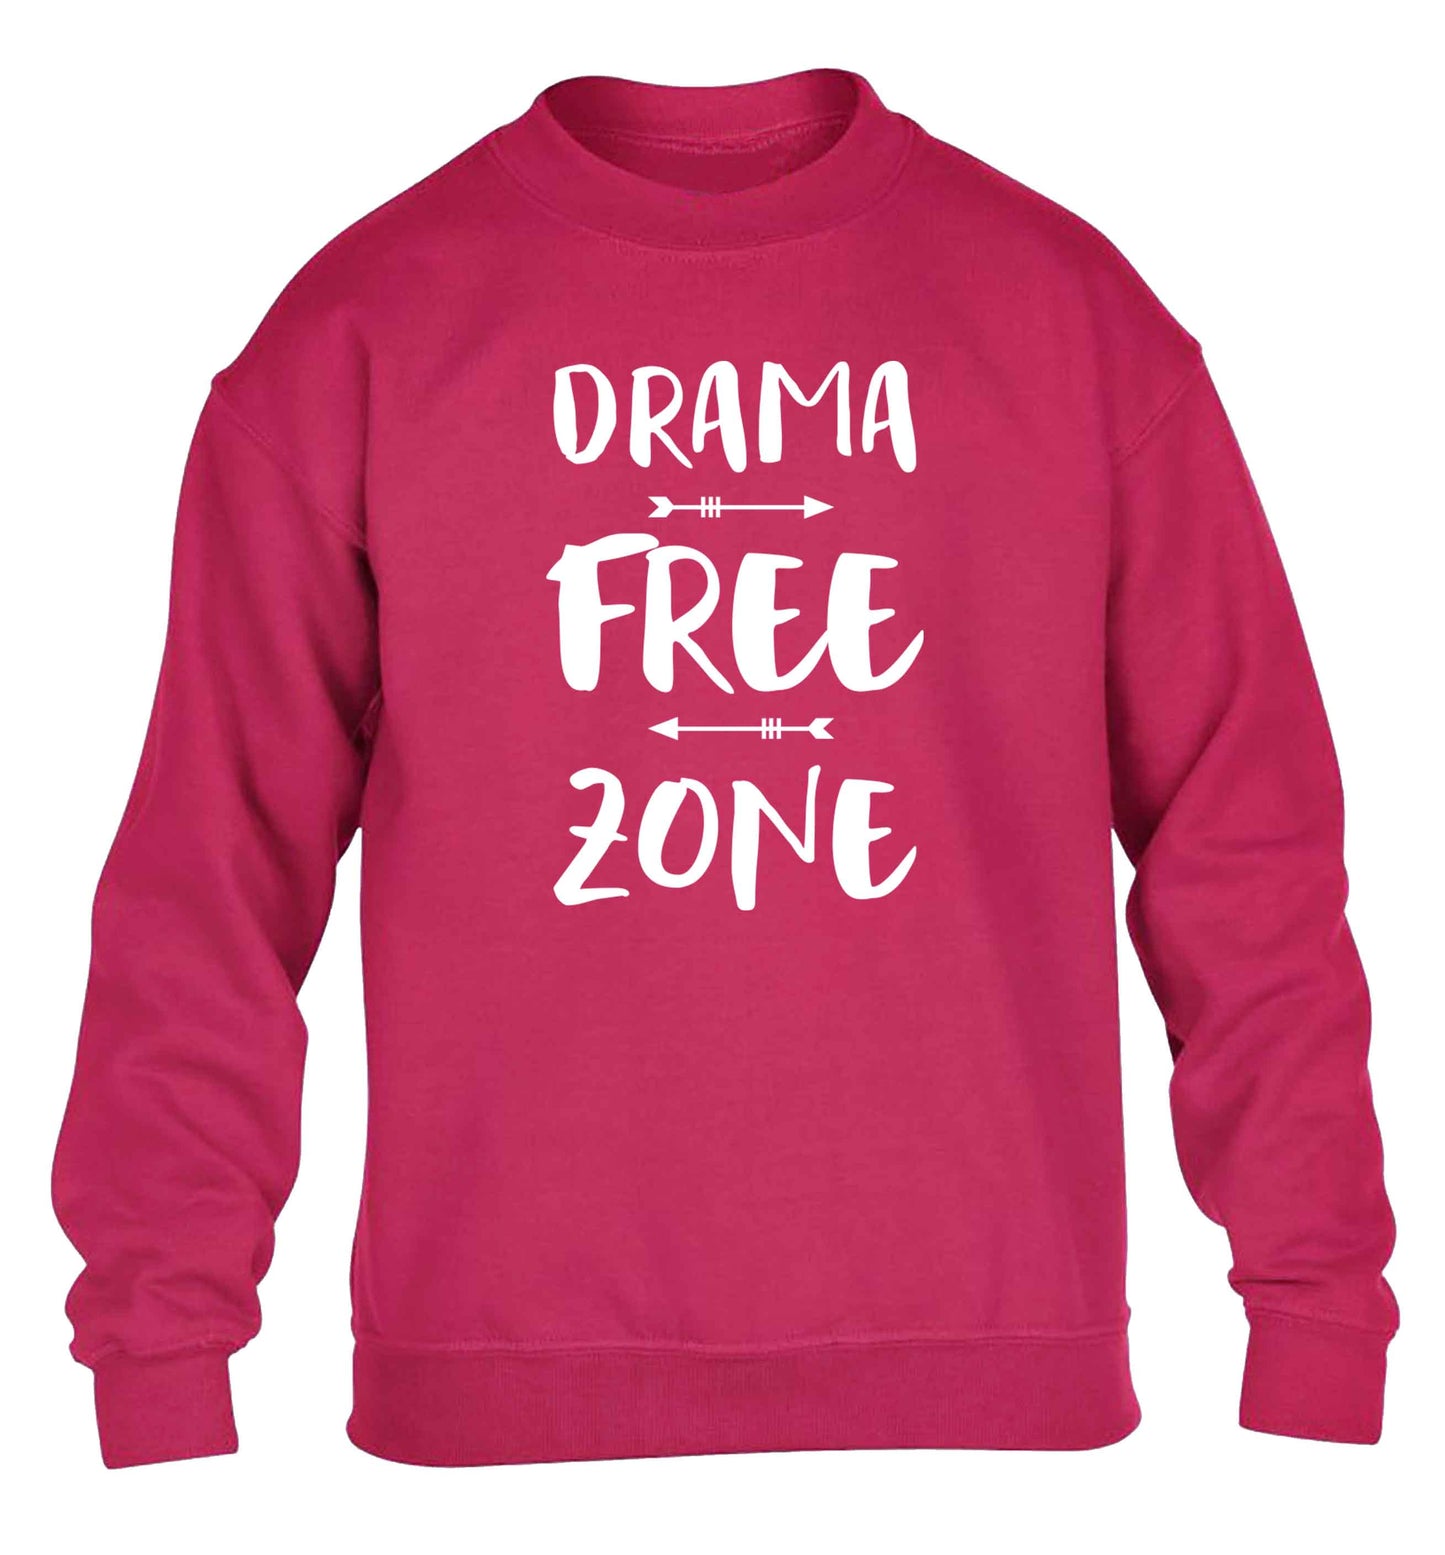 Drama free zone children's pink sweater 12-13 Years